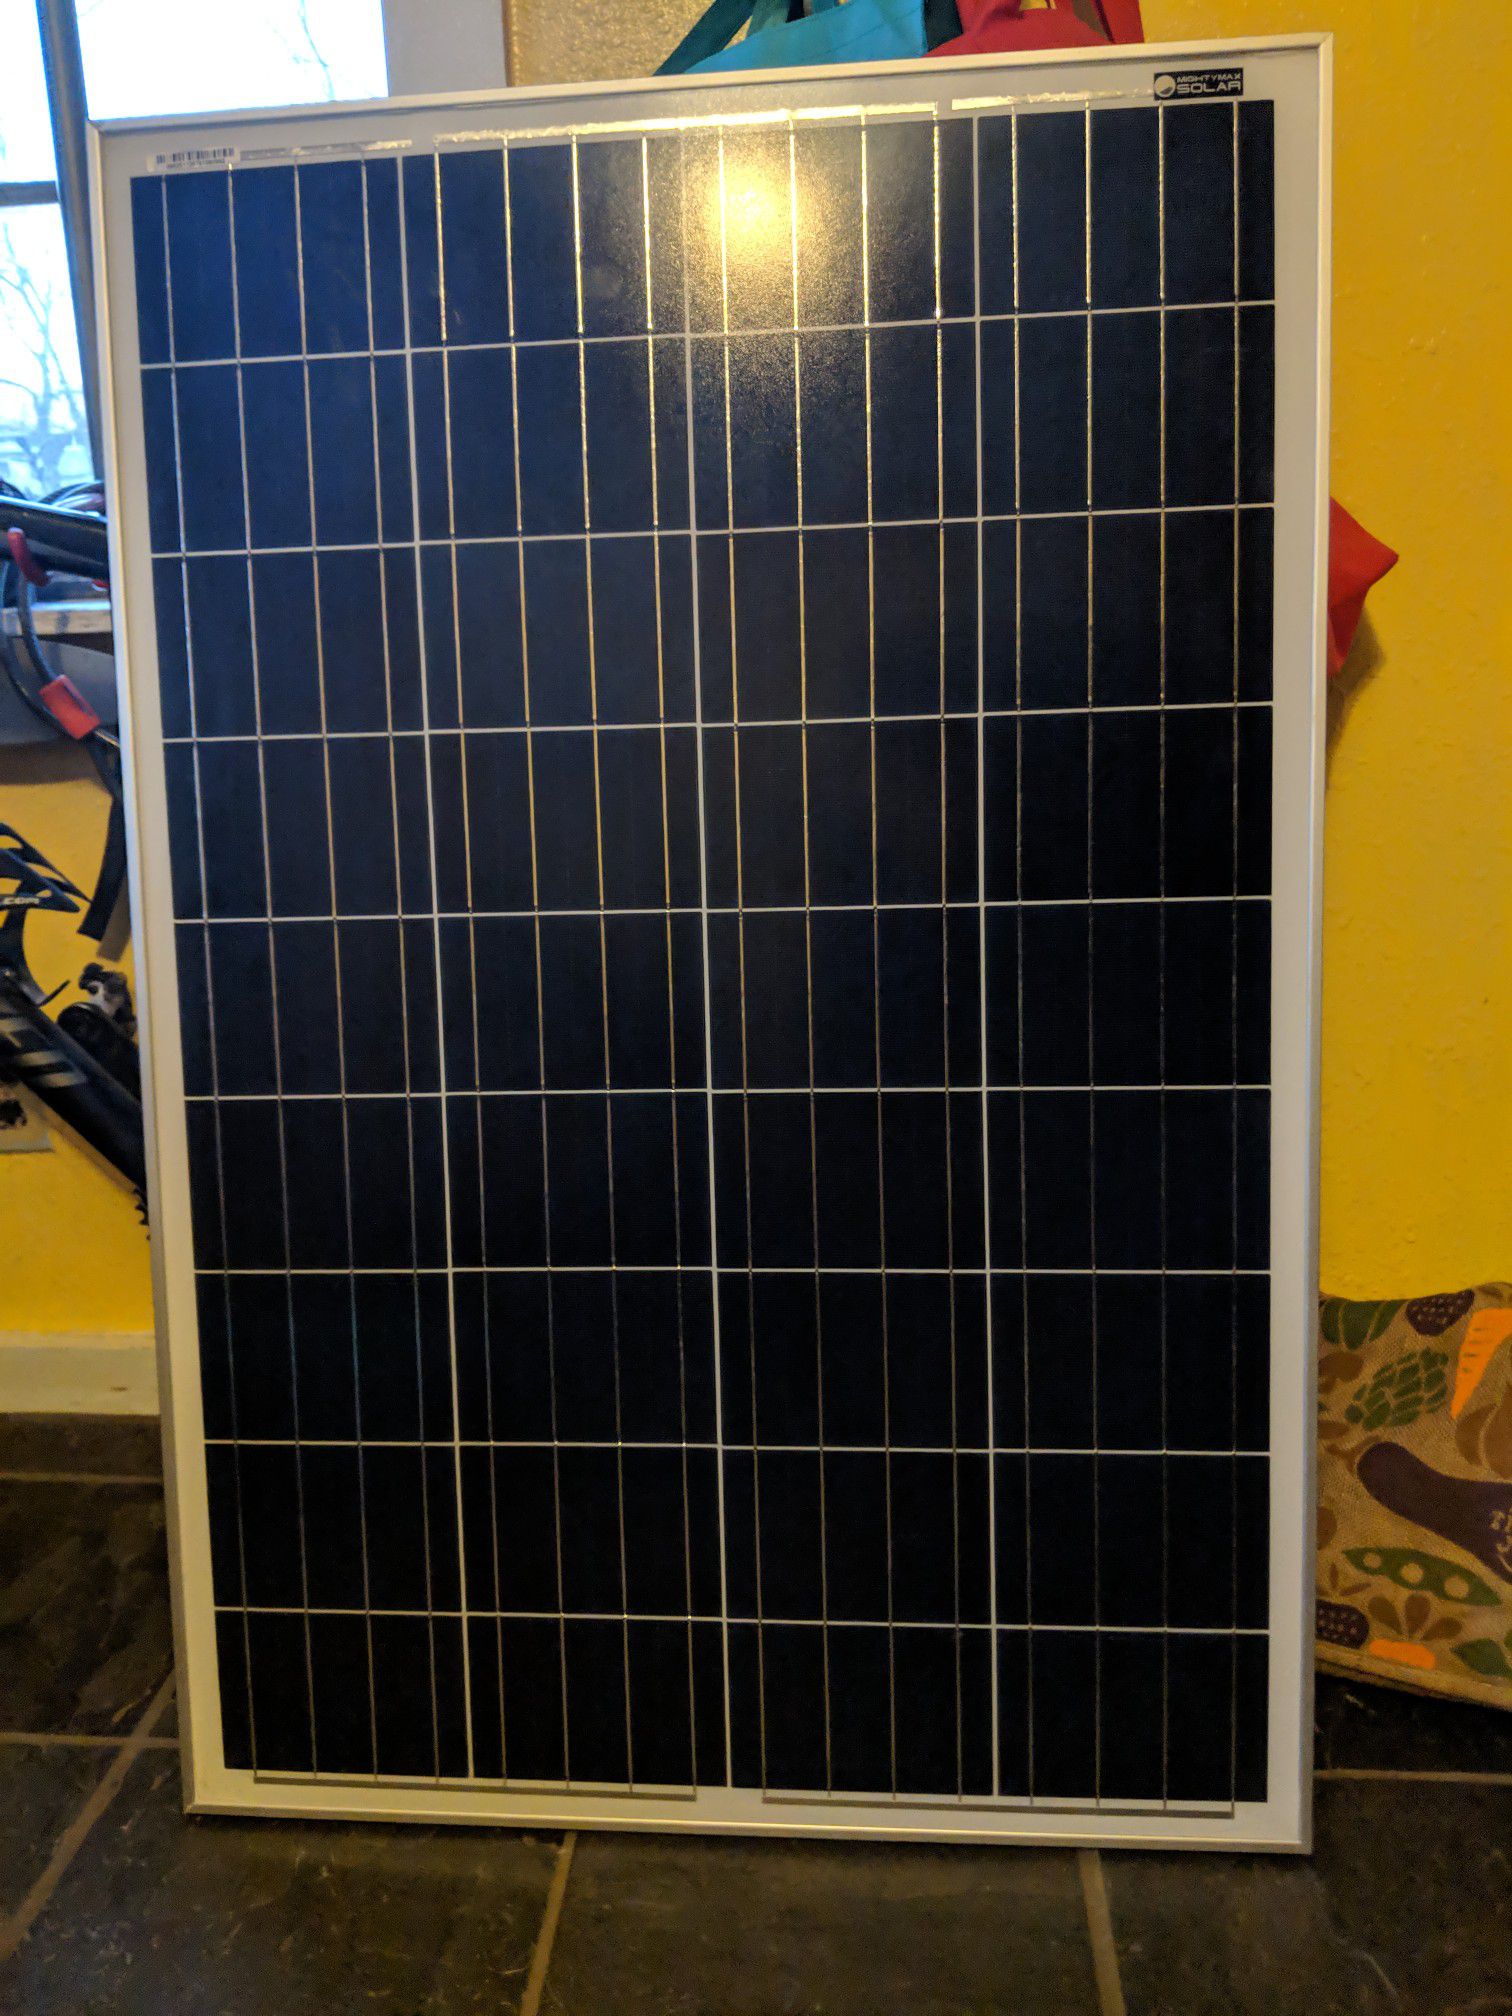 New still in box 100watt crystalline solar panel